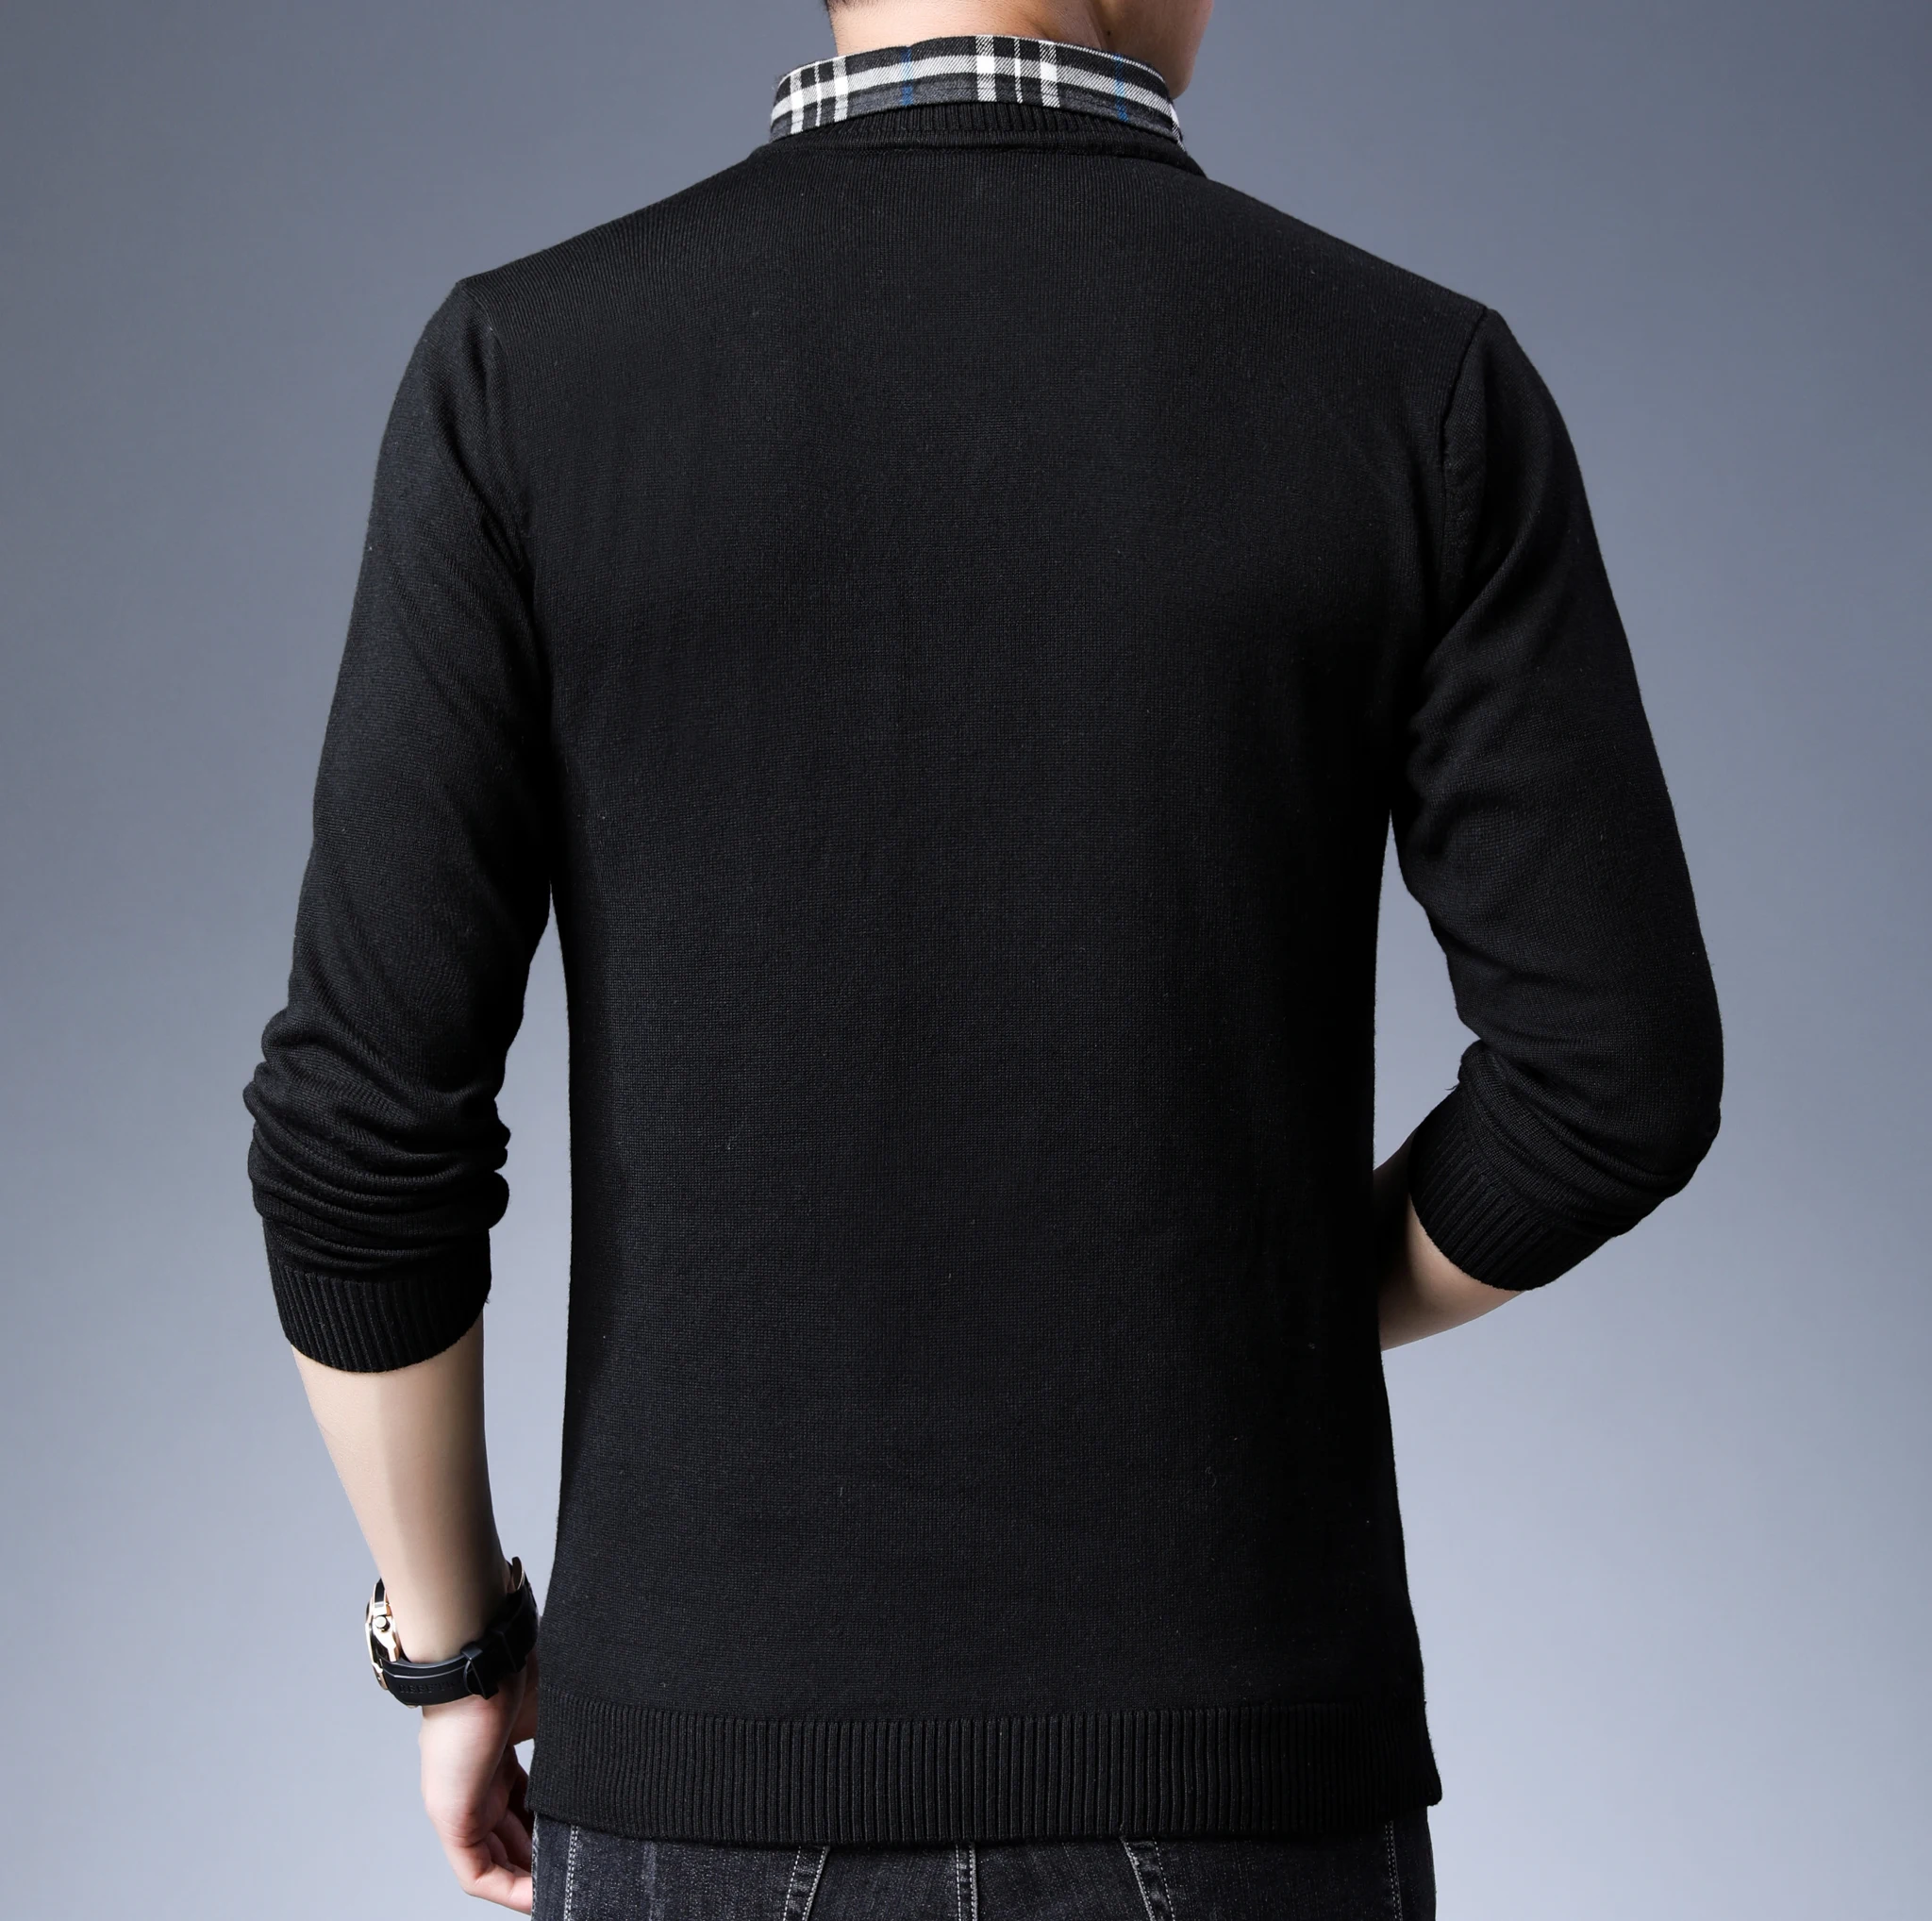 Повседневные мужские свитера бренд Slim Fit сплошной цвет пуловер с вырезом в виде буквы V длинный рукав трикотаж модный мужской вязаный Классический Топ дизайн